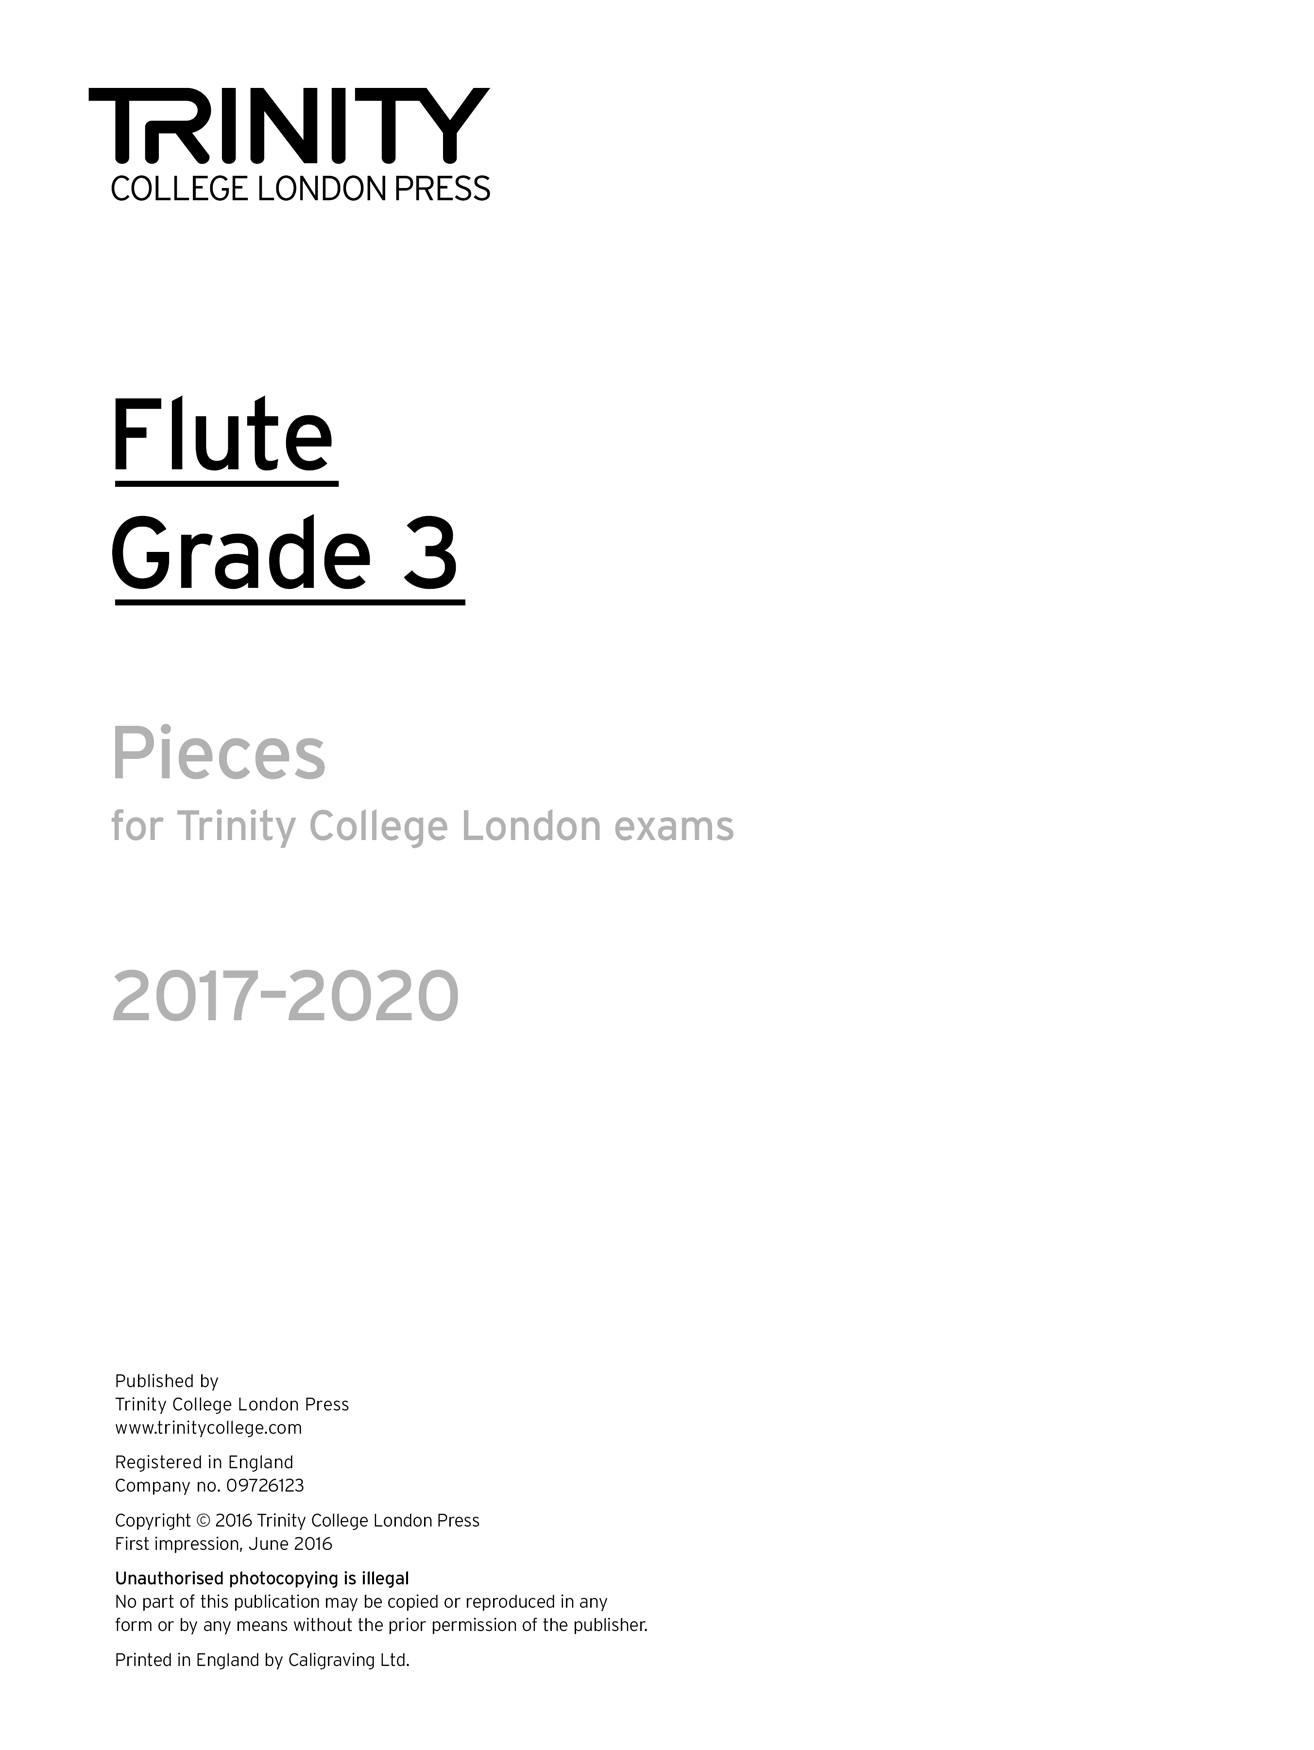 Flute Exam 2017-2020 - Grade 3: Flute: Part